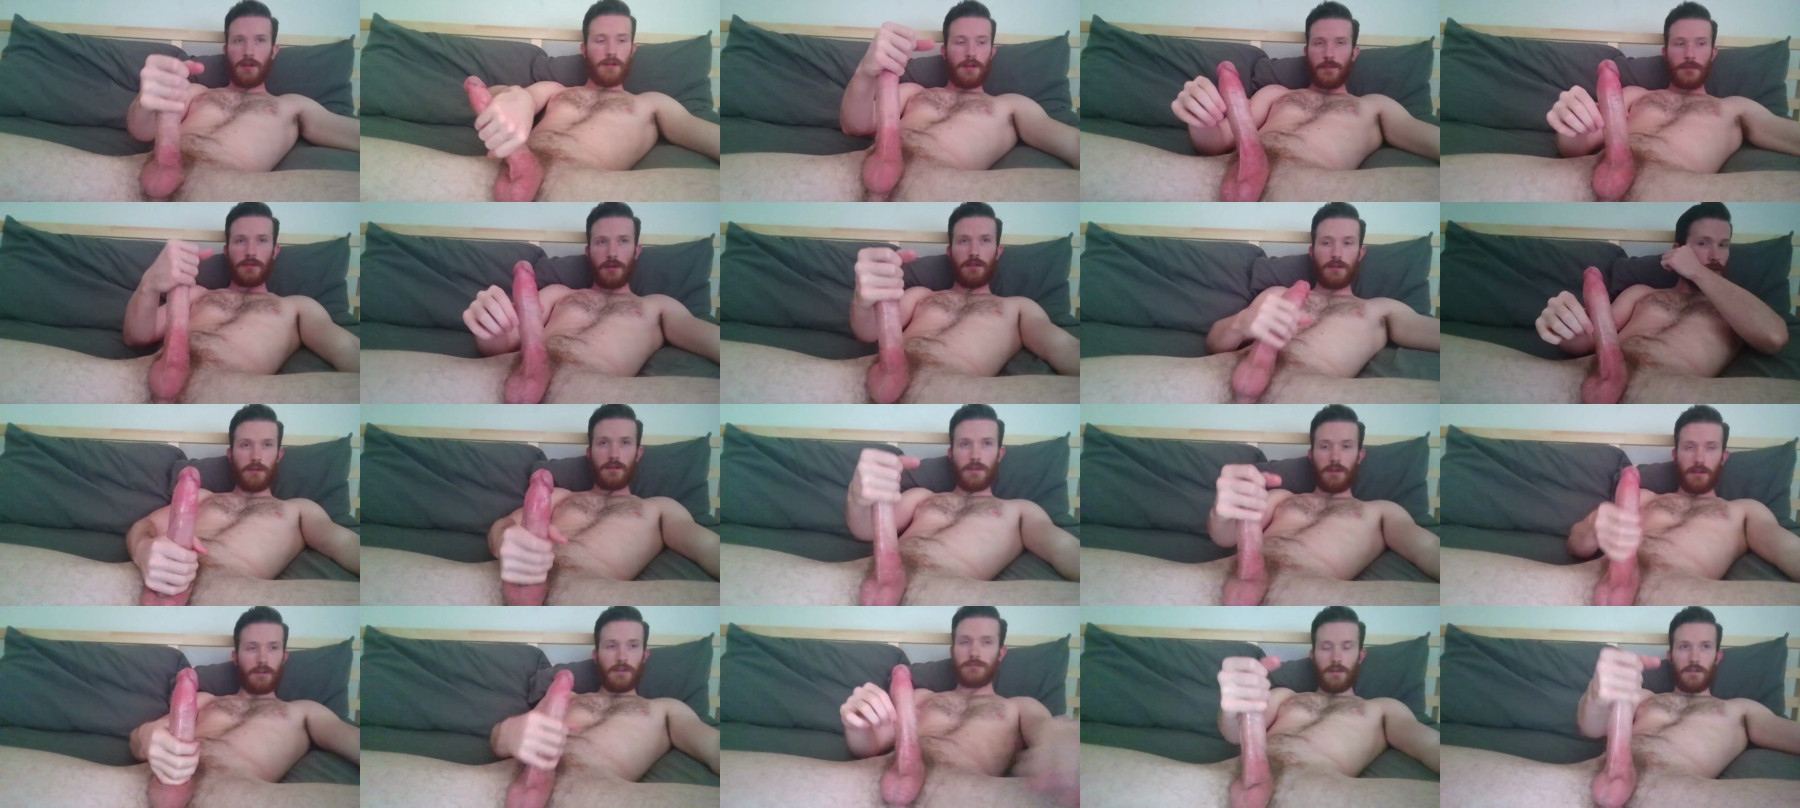 Jason_Pourne  30-06-2021 Male Nude